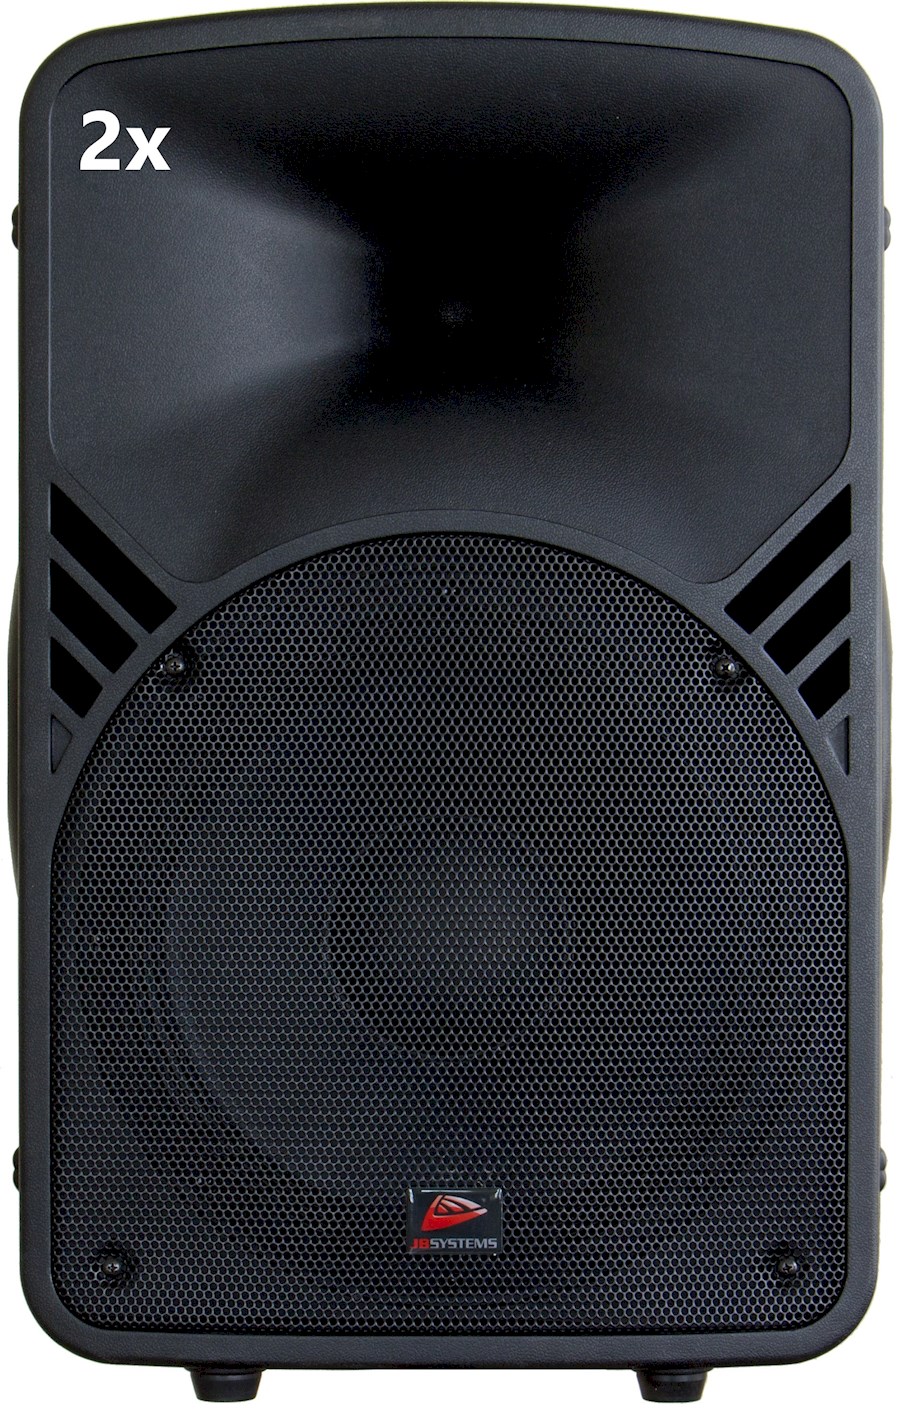 Huur 2x 12 inch top speaker... van Raoul